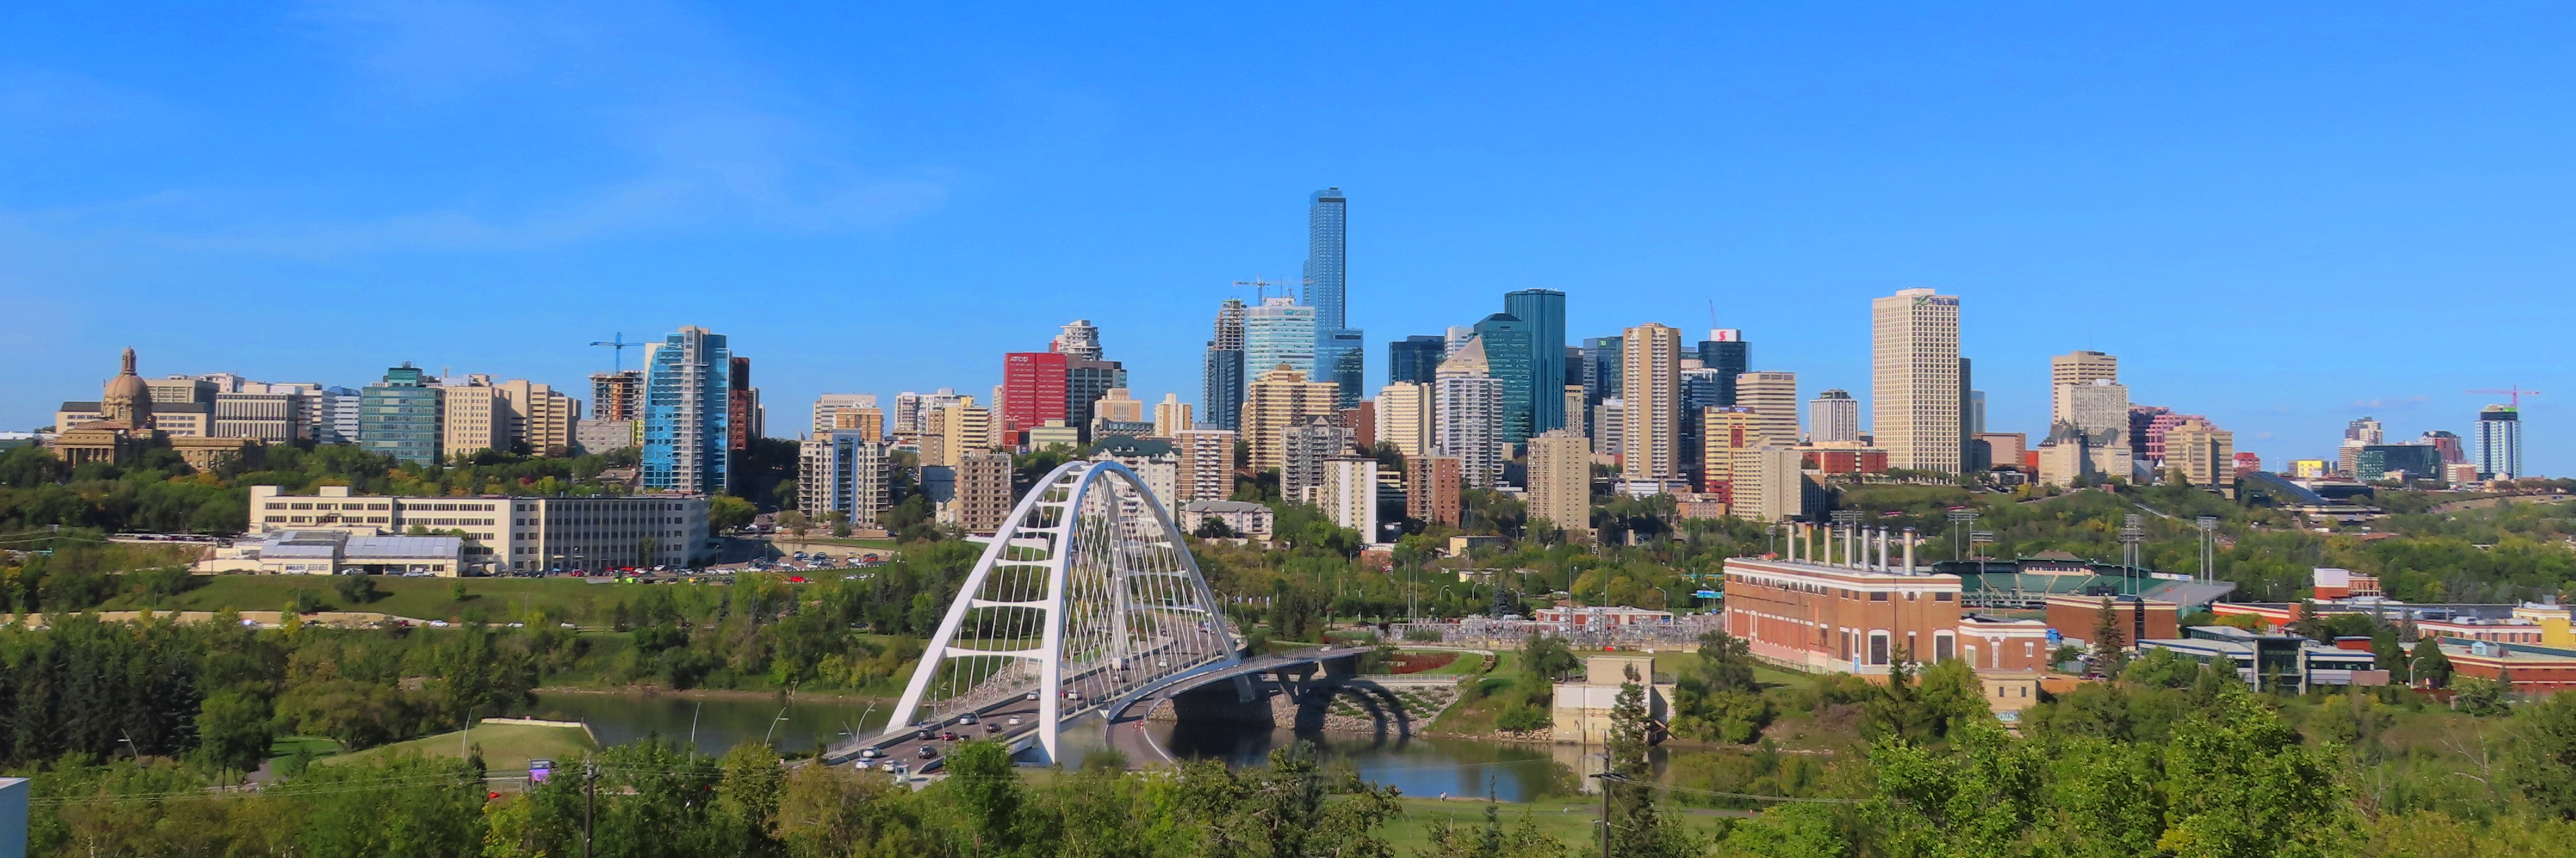 Downtown Edmonton - Wikipedia